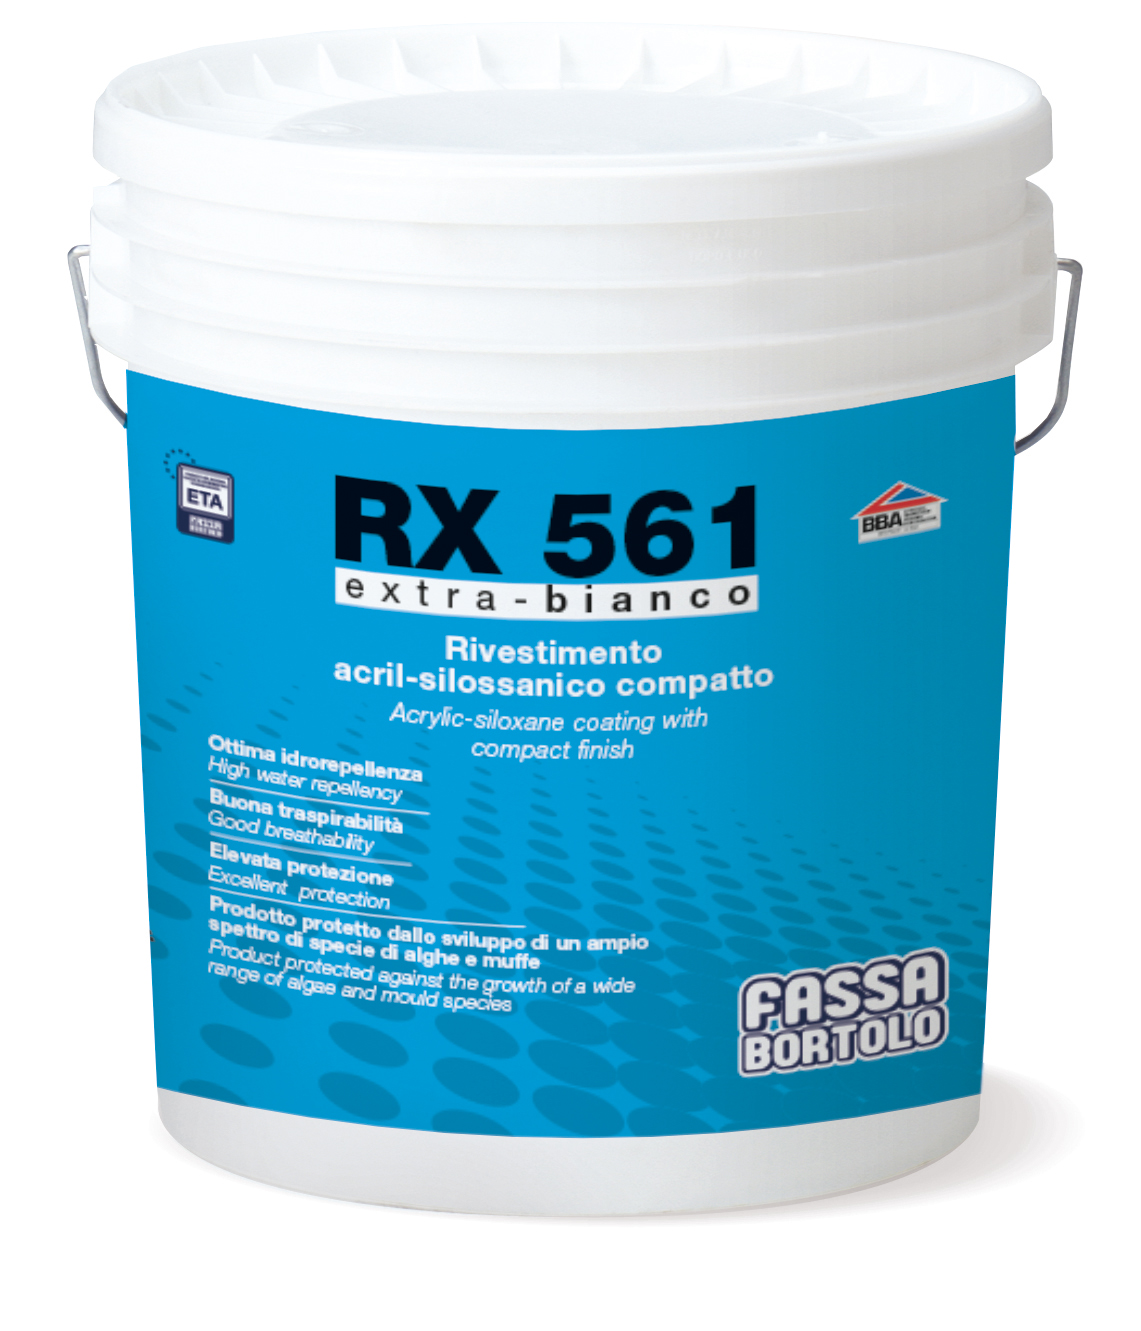 RX 561: Rivestimento acril-silossanico compatto